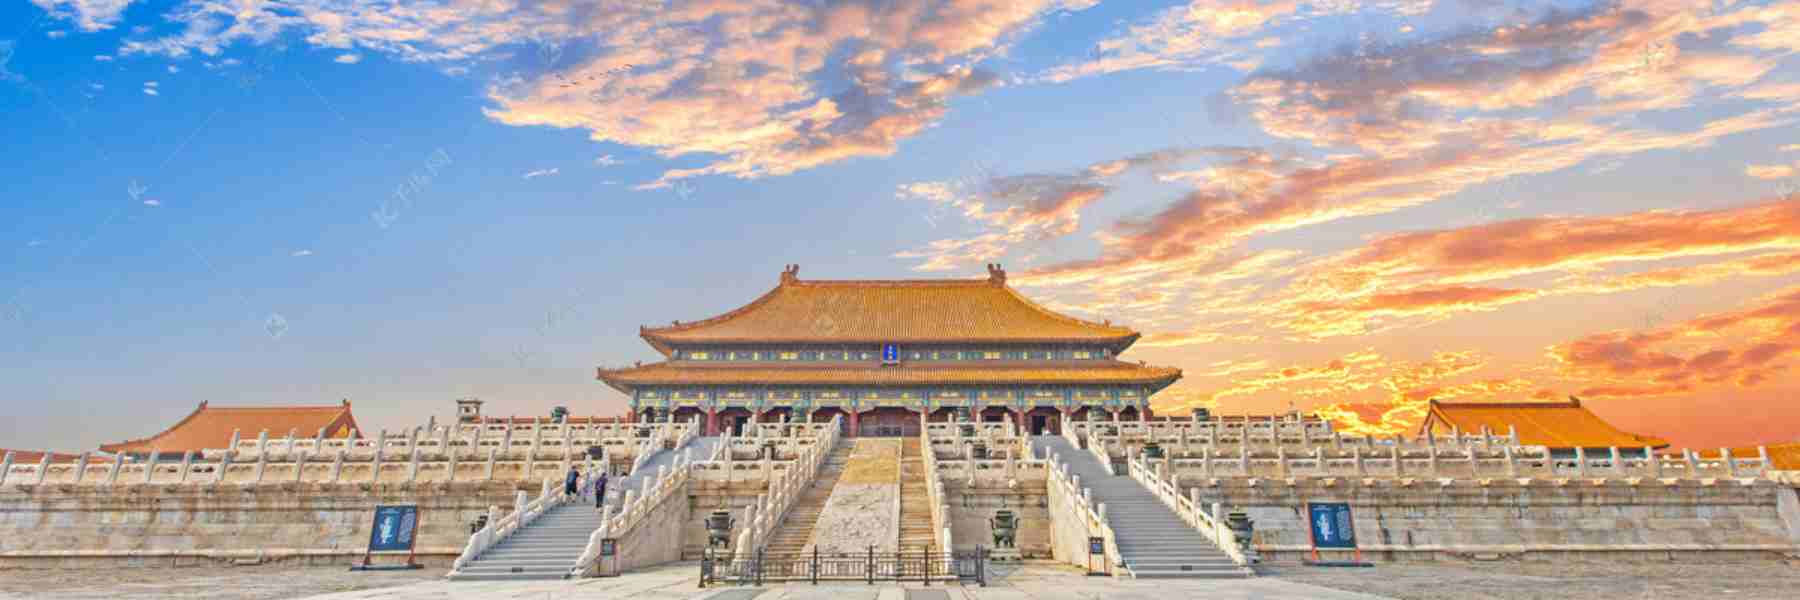 10-Day China Classic Tour of Hong Kong, Shanghai, Xi’an and Beijing